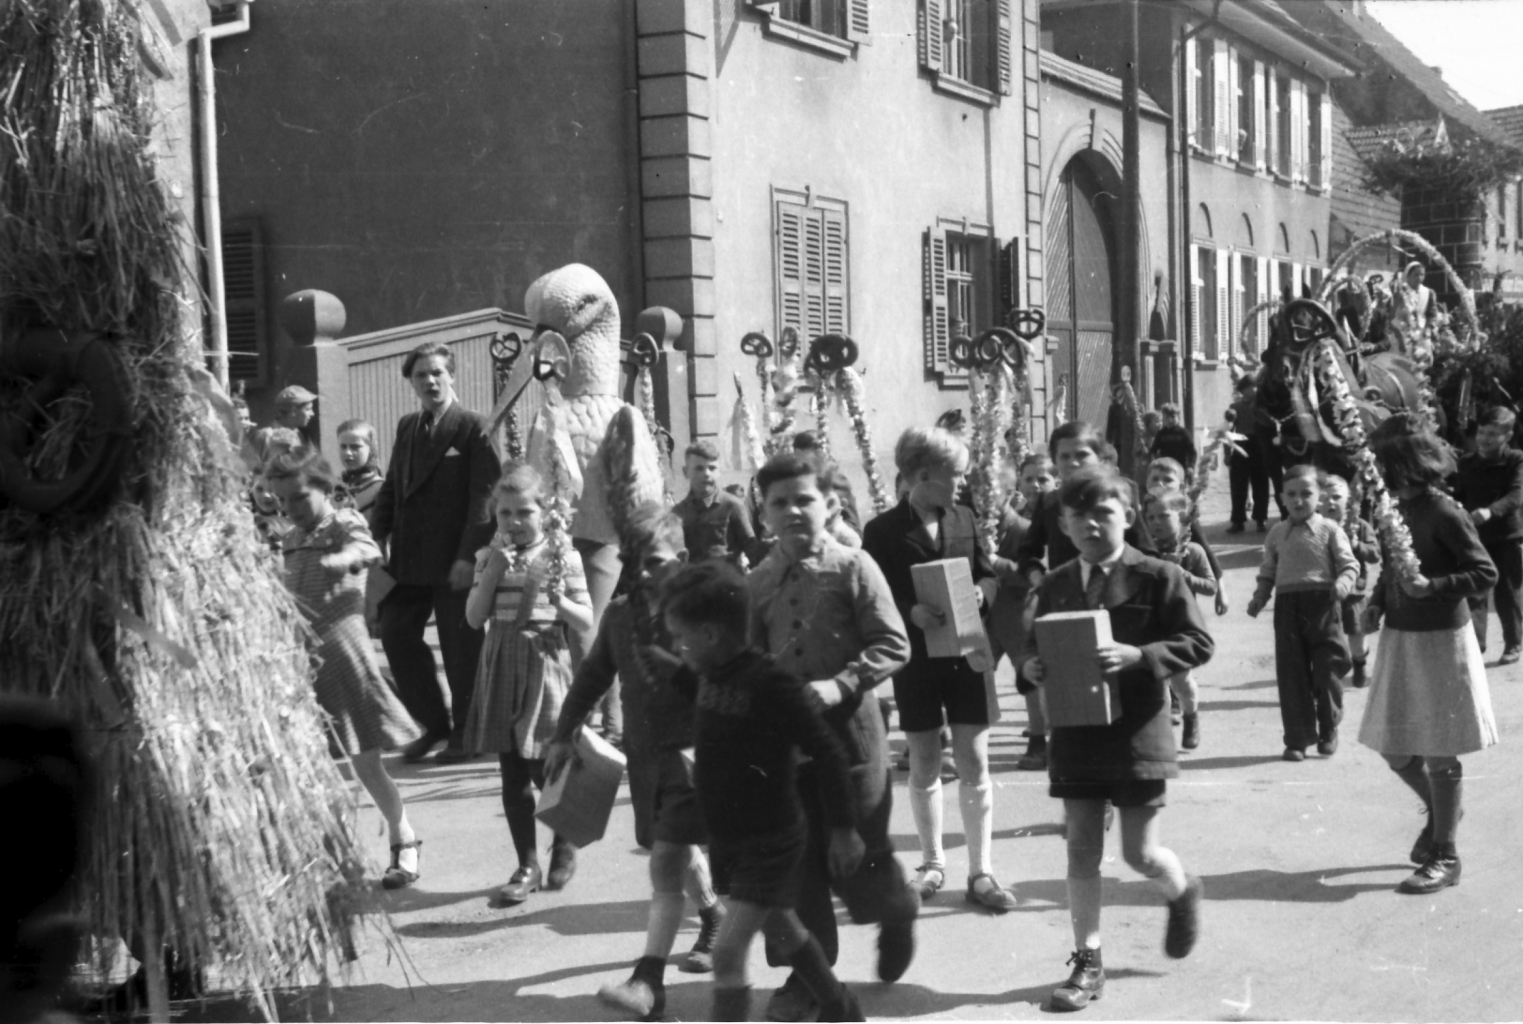 Historische Aufnahme vom Sommertagszug Oftersheim, eventuell um 1950